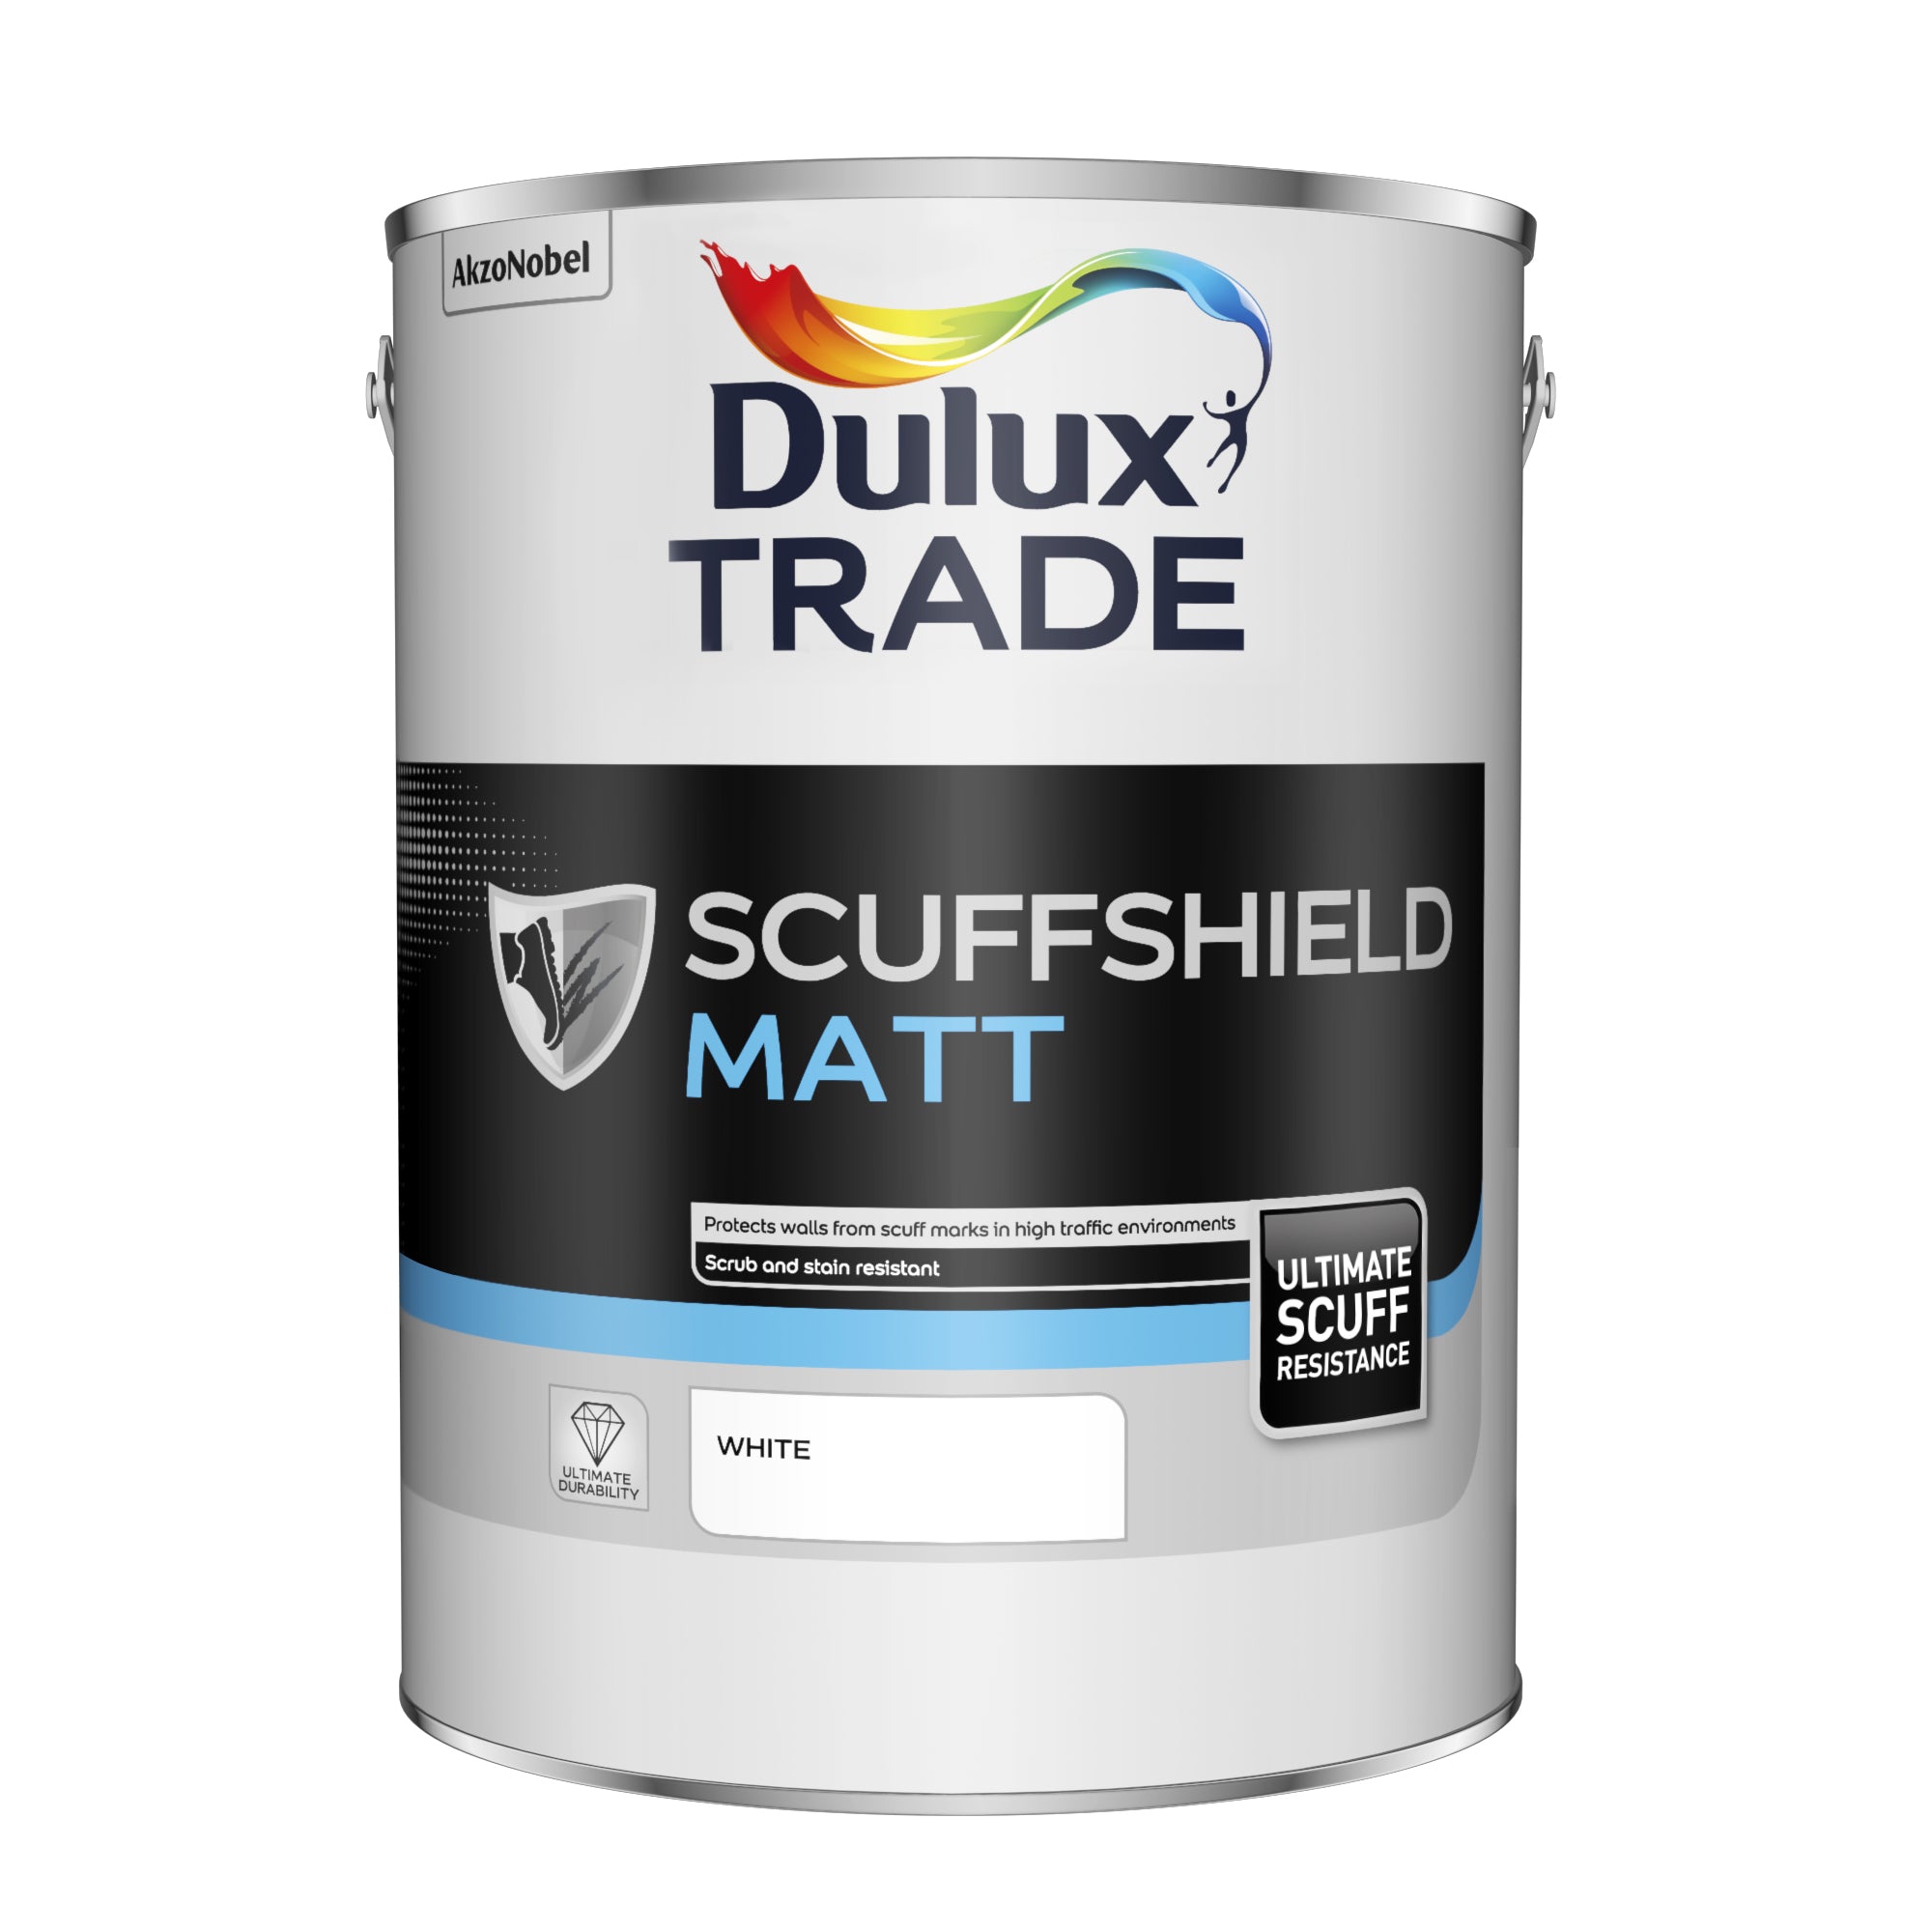 Dulux Trade Scuffshield Matt White 5L